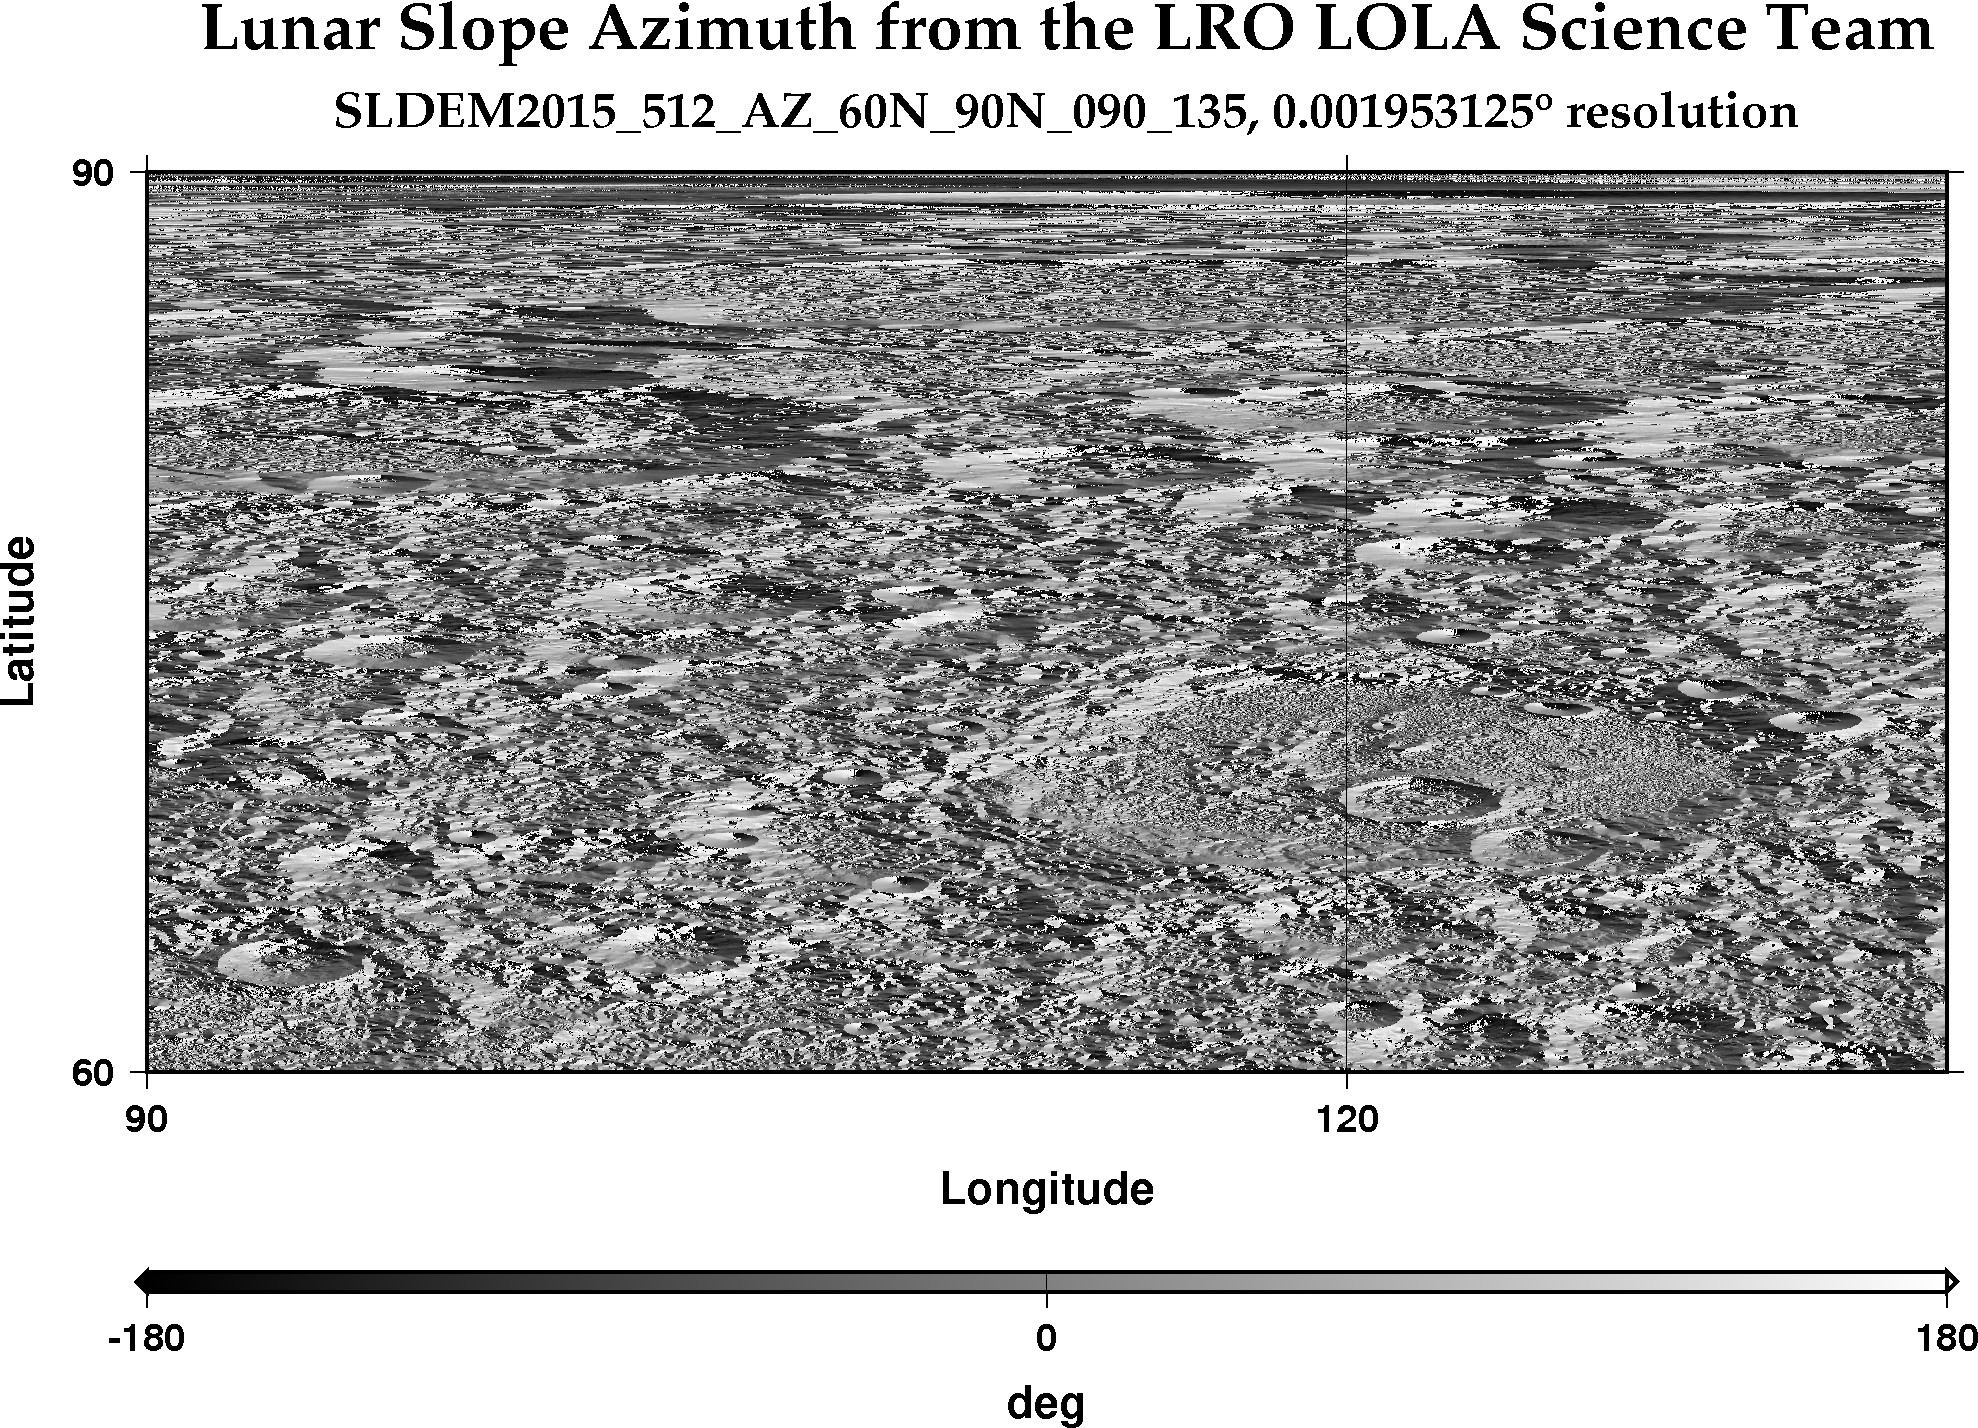 image of lunar topography for SLDEM2015_512_AZ_60N_90N_090_135